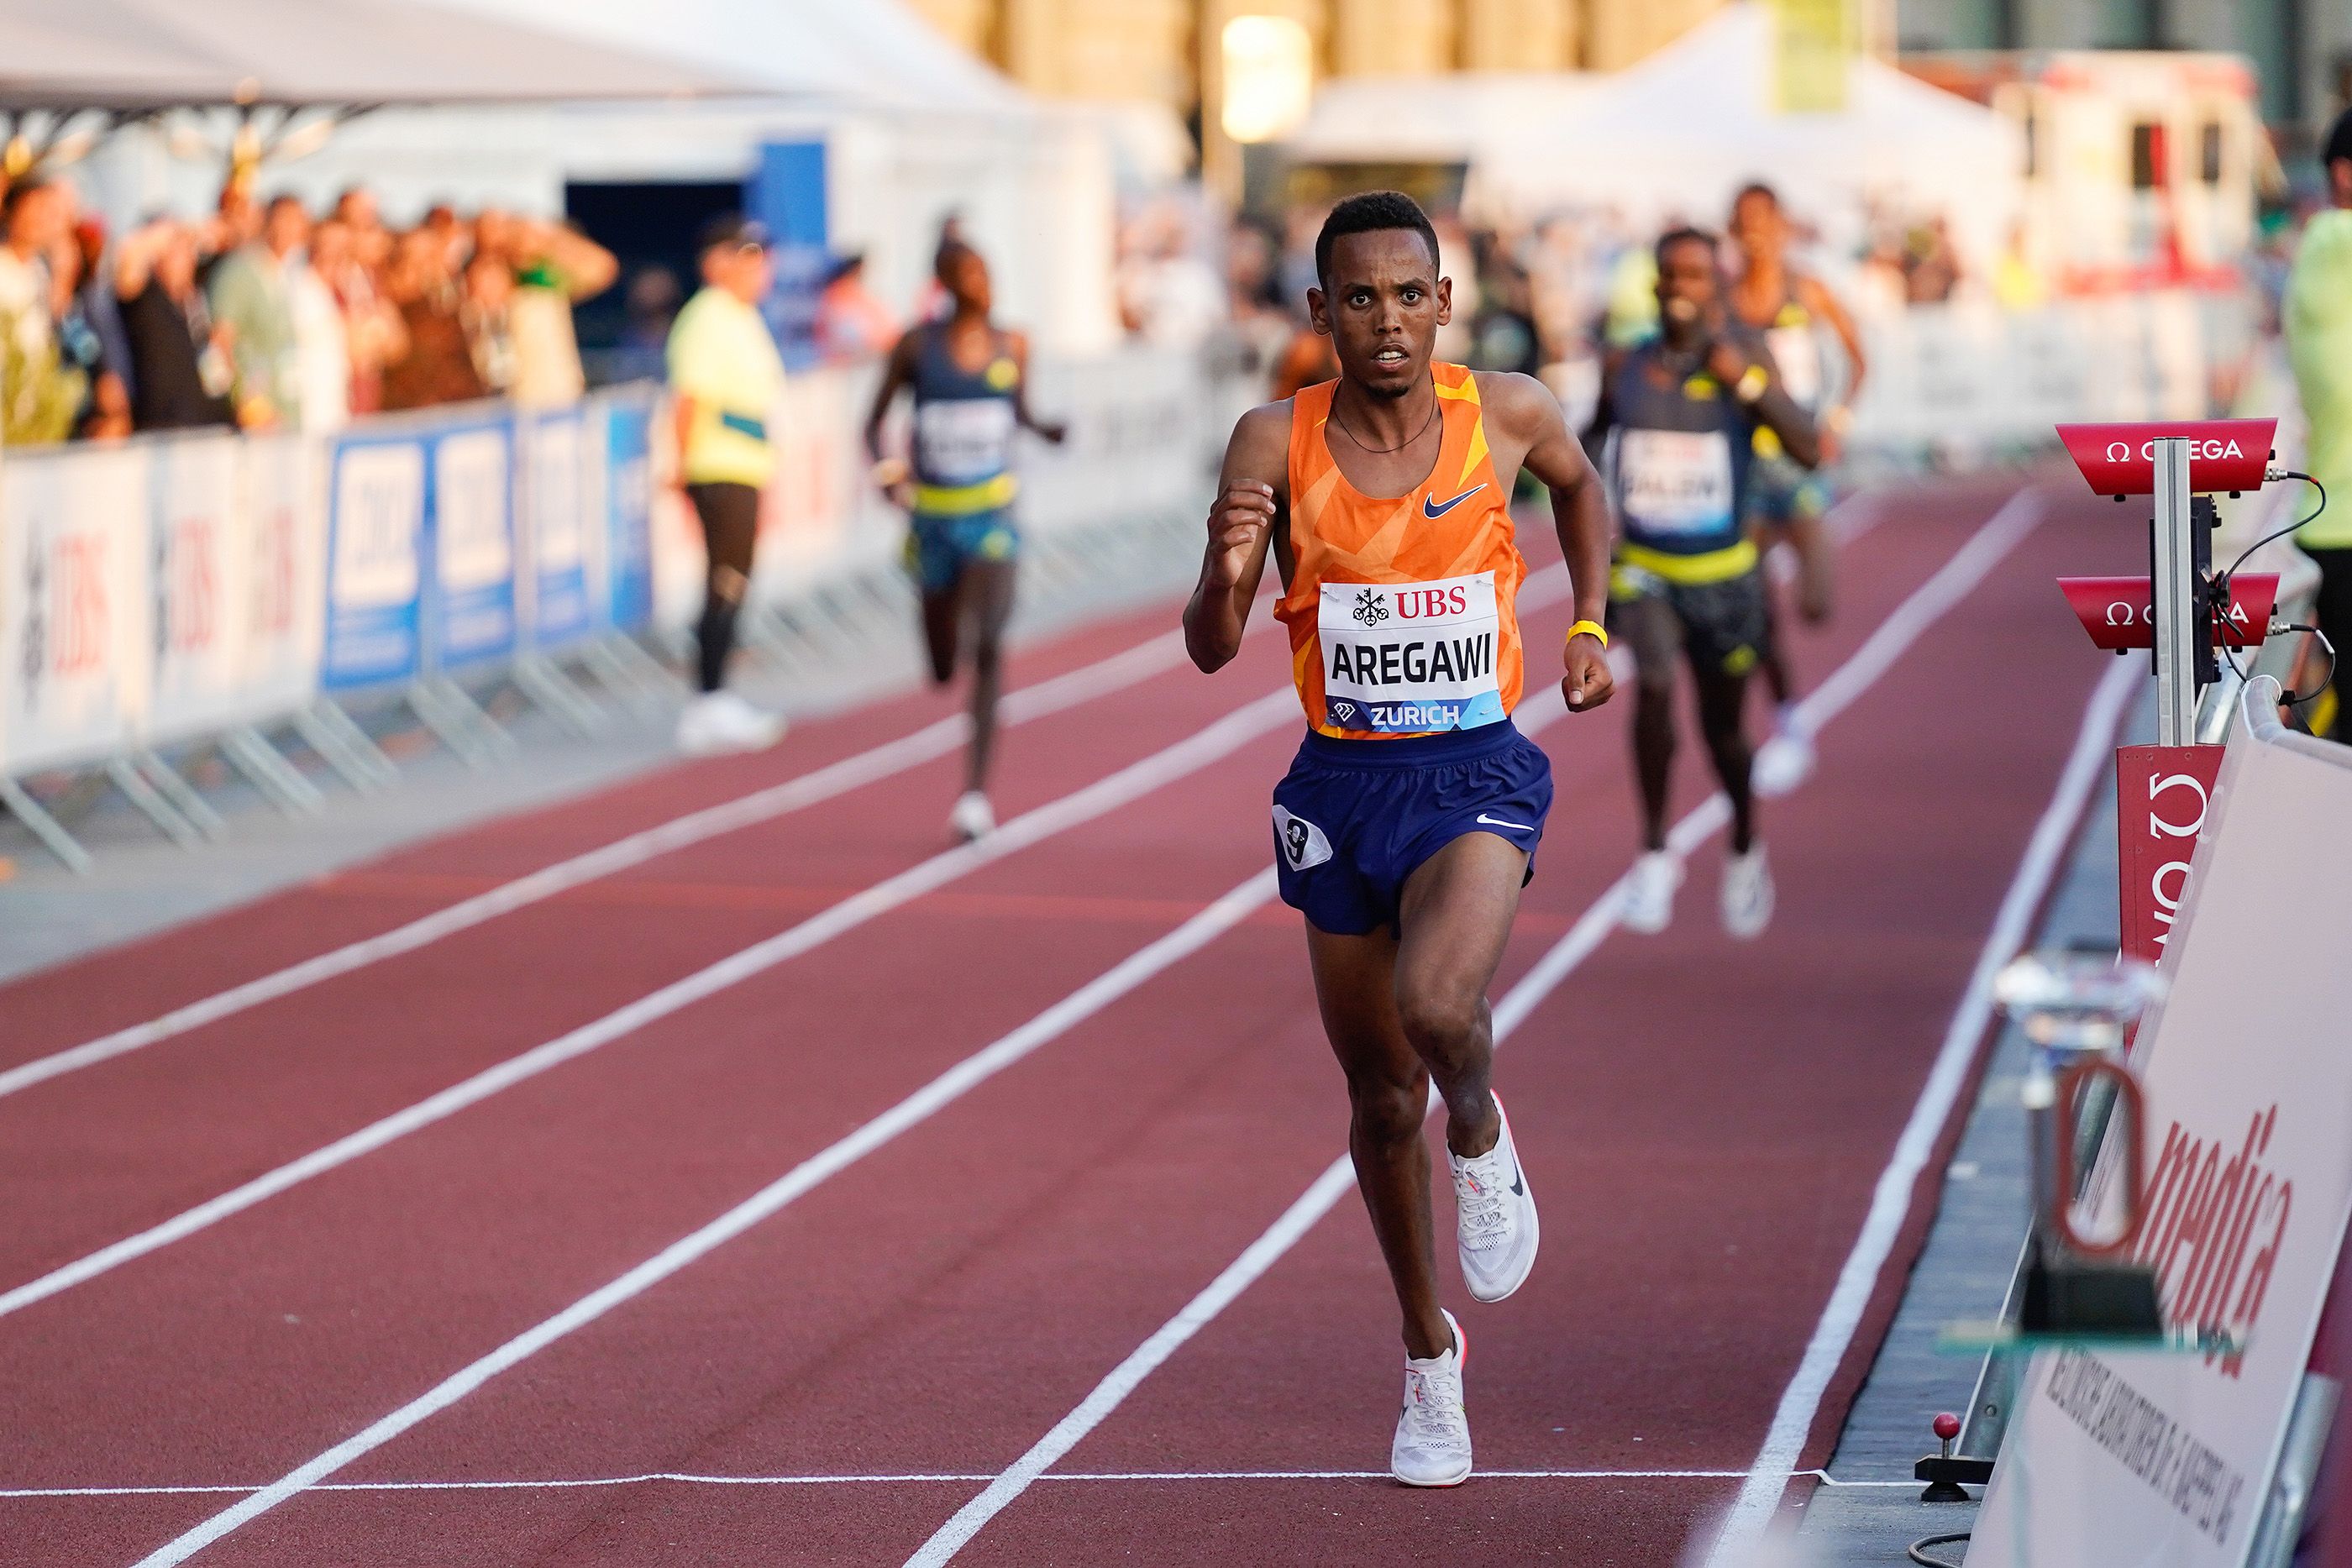 Berihu Aregawi wins the 5000m at the Wanda Diamond League final in Zurich